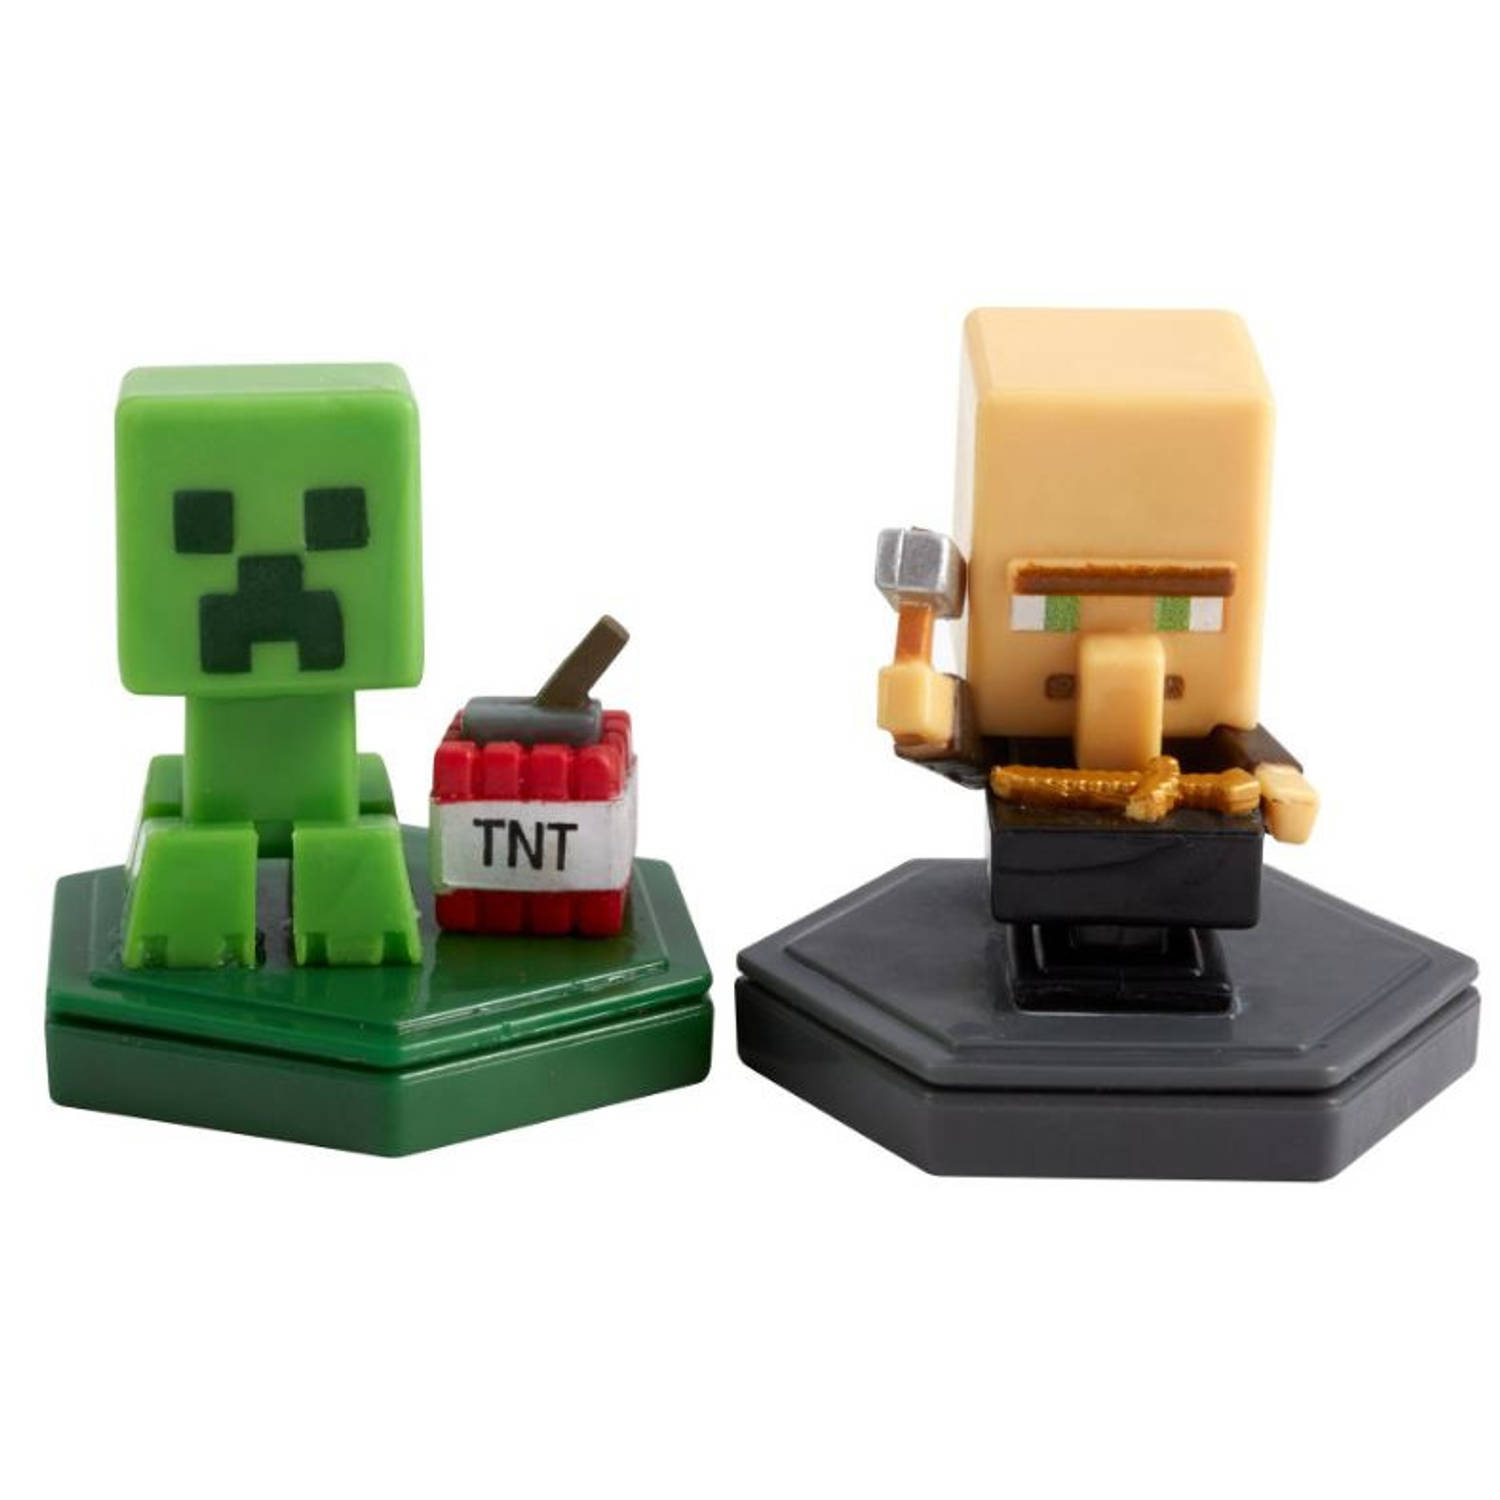 Mattel set Minecraft Earth Boost Mini 5 cm beige/groen 2-delig